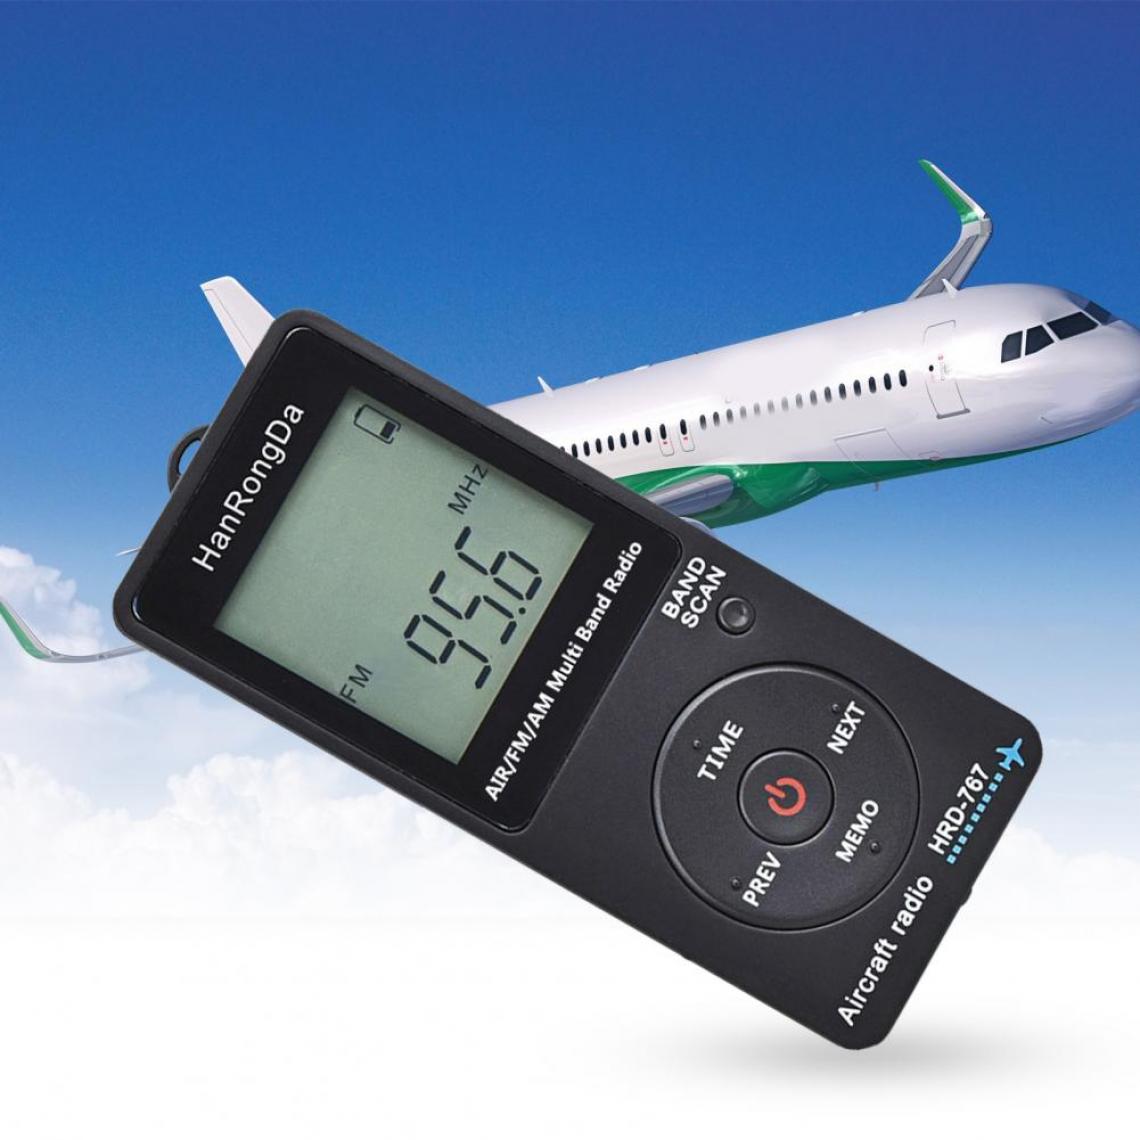 Universal - Mini radio de poche avion avec récepteur radio portable écran LCD bouton de verrouillage FM/AM/radio avec écouteur - Radio